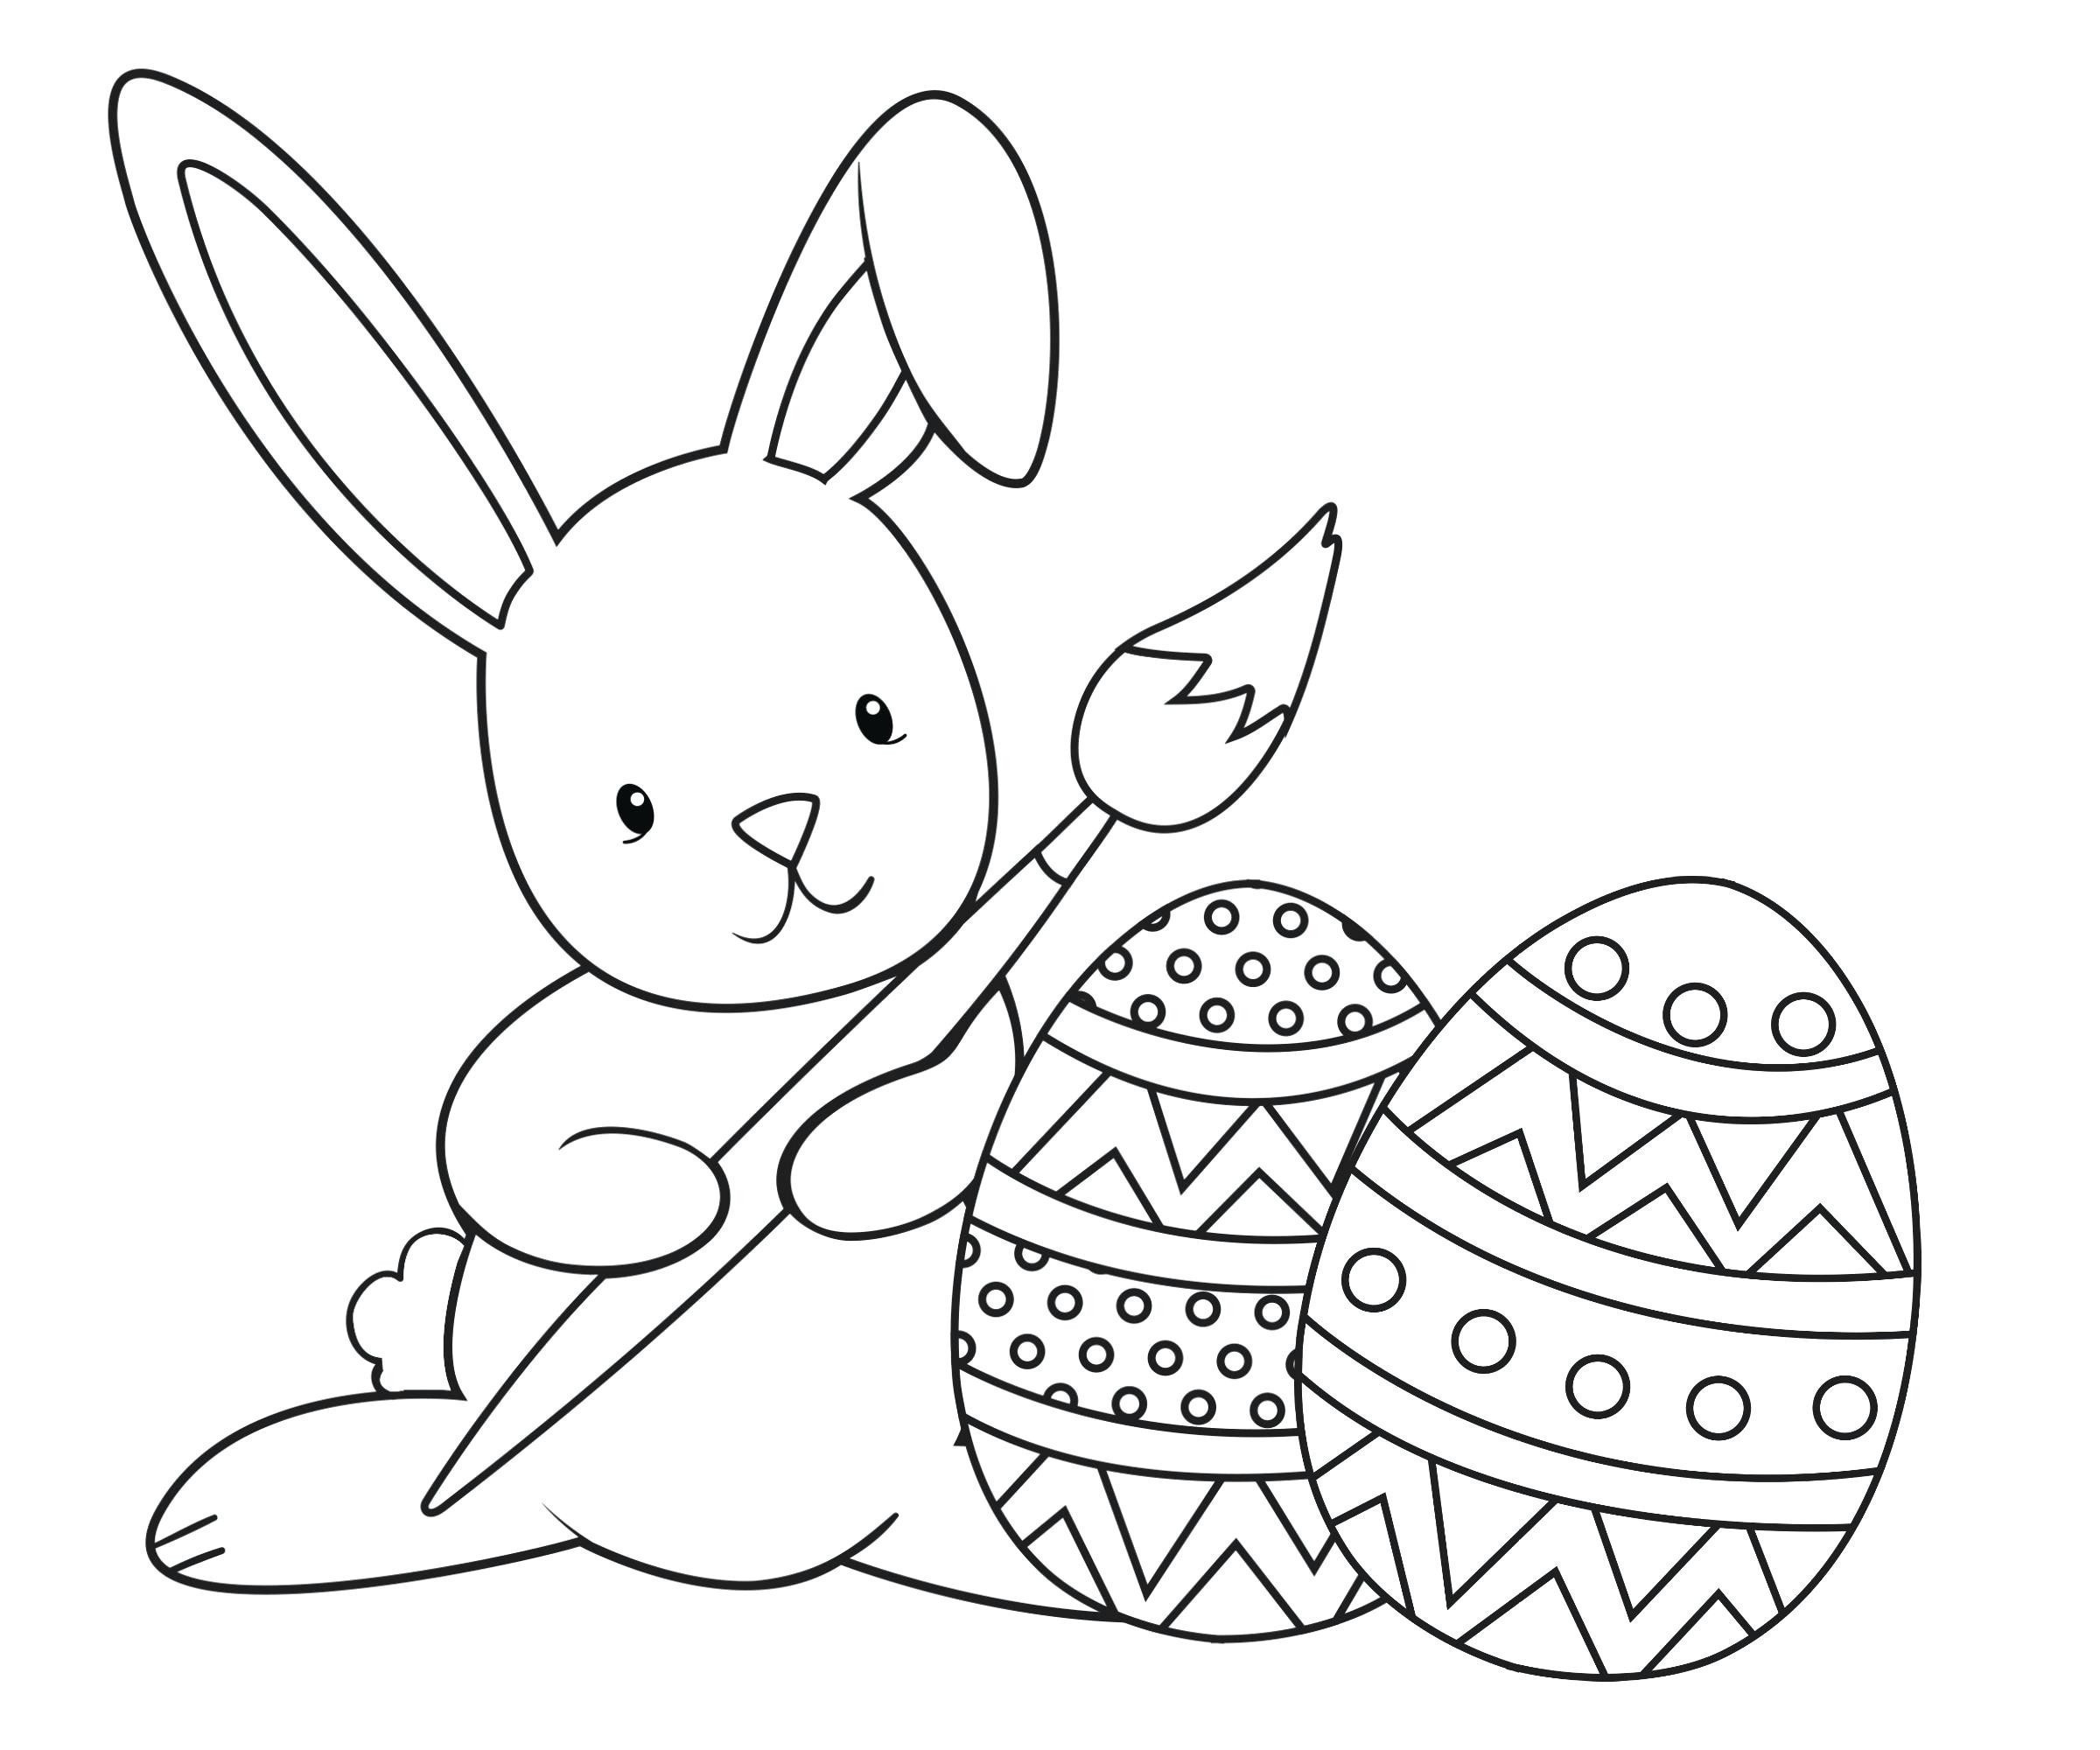 Tranh tô màu chú thỏ vẽ quả trứng